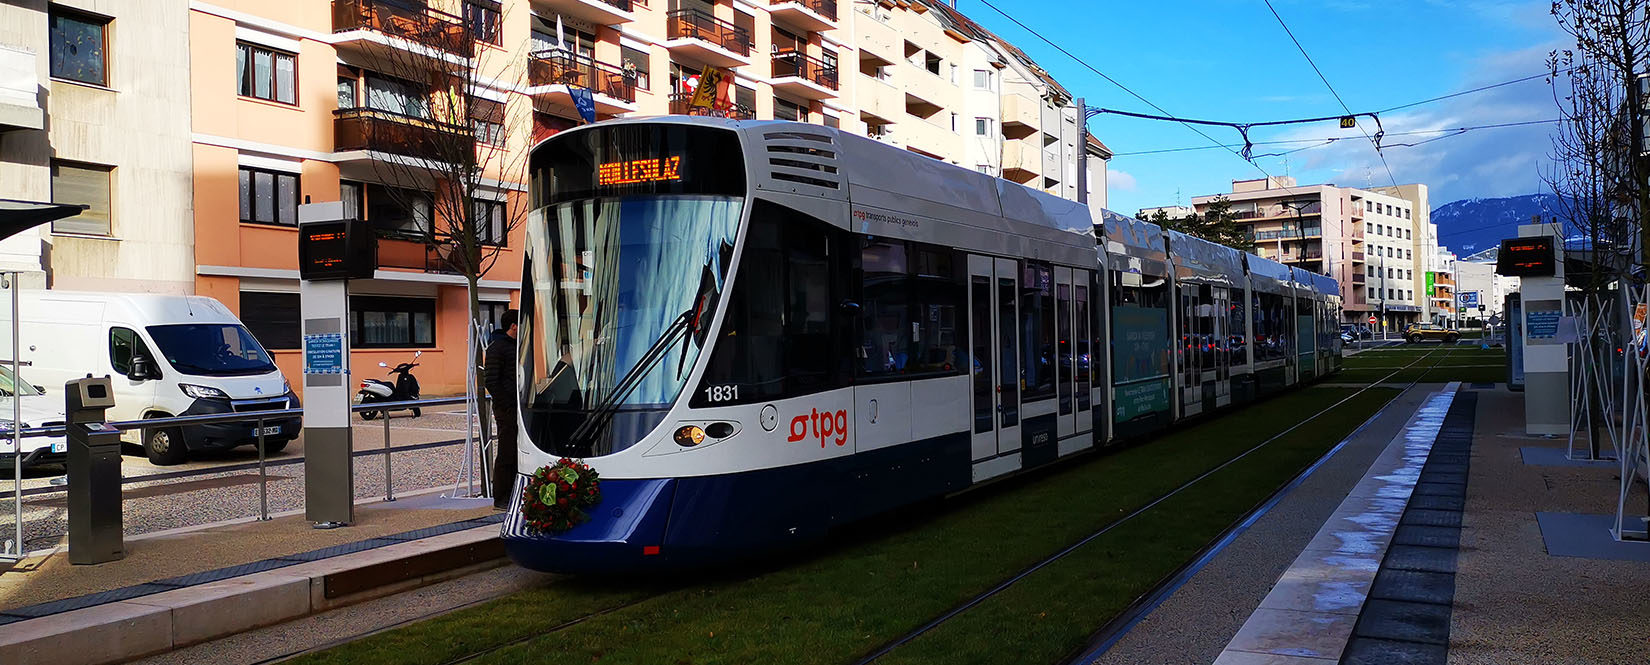 Le tram 17 circule depuis le 15 décembre